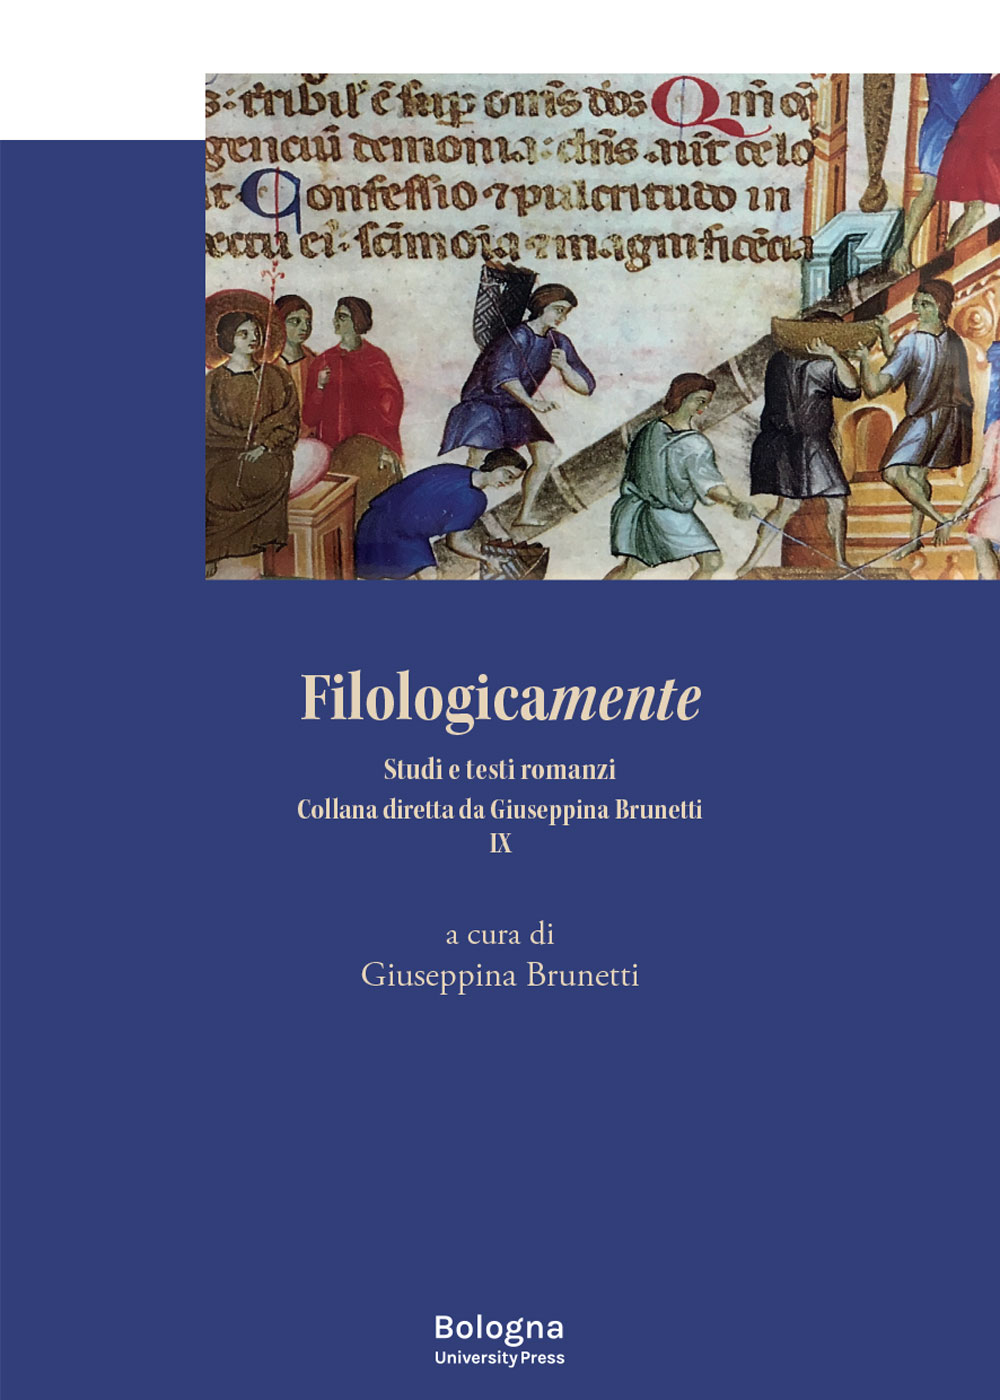 Filologicamente. Studi e testi romanzi IX - Bologna University Press